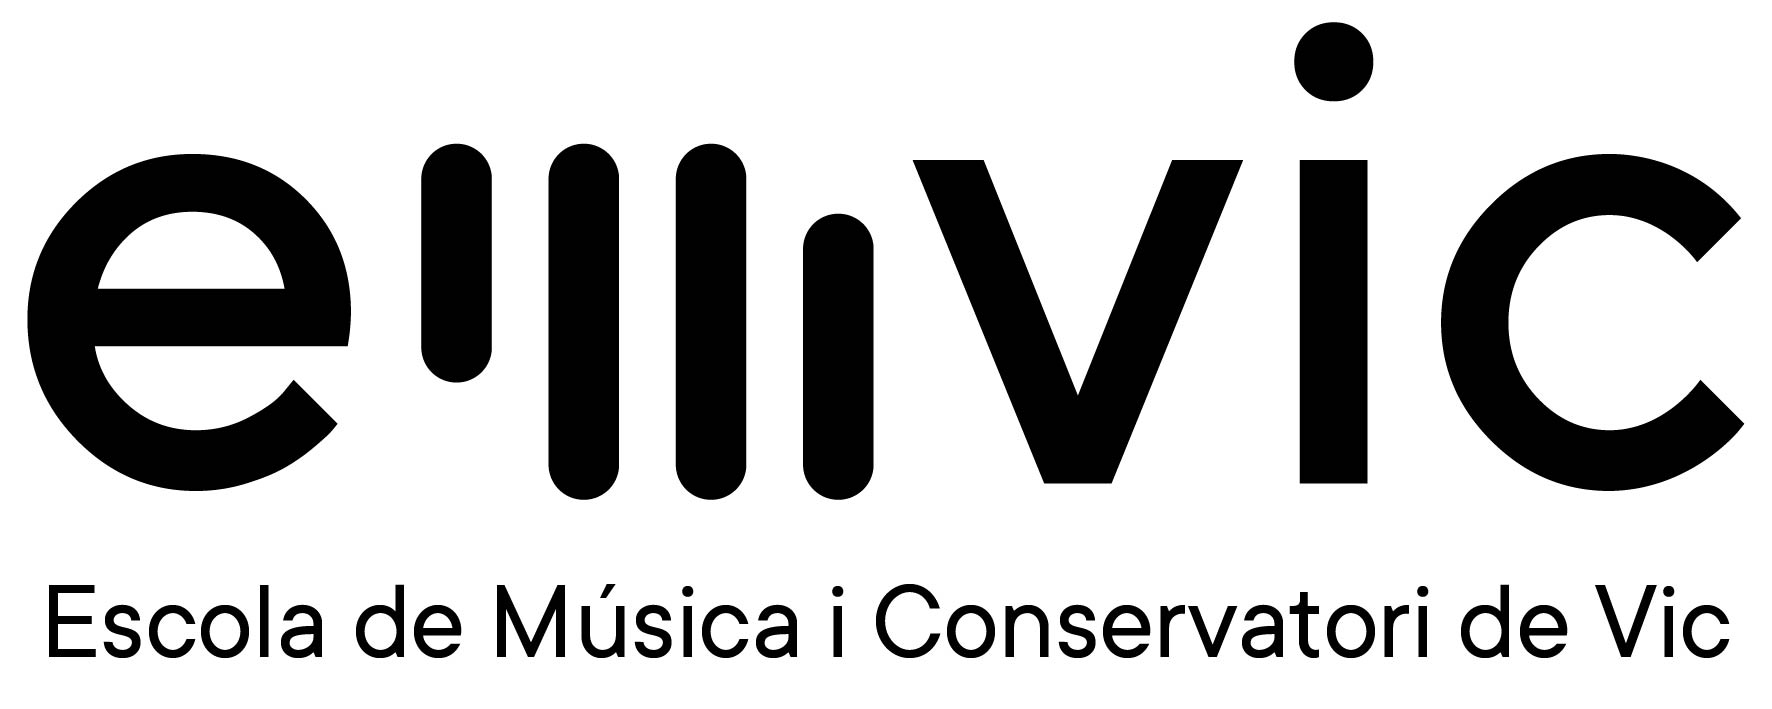 Escola de Música i Conservatori de Vic | Eduquem els infants en la música